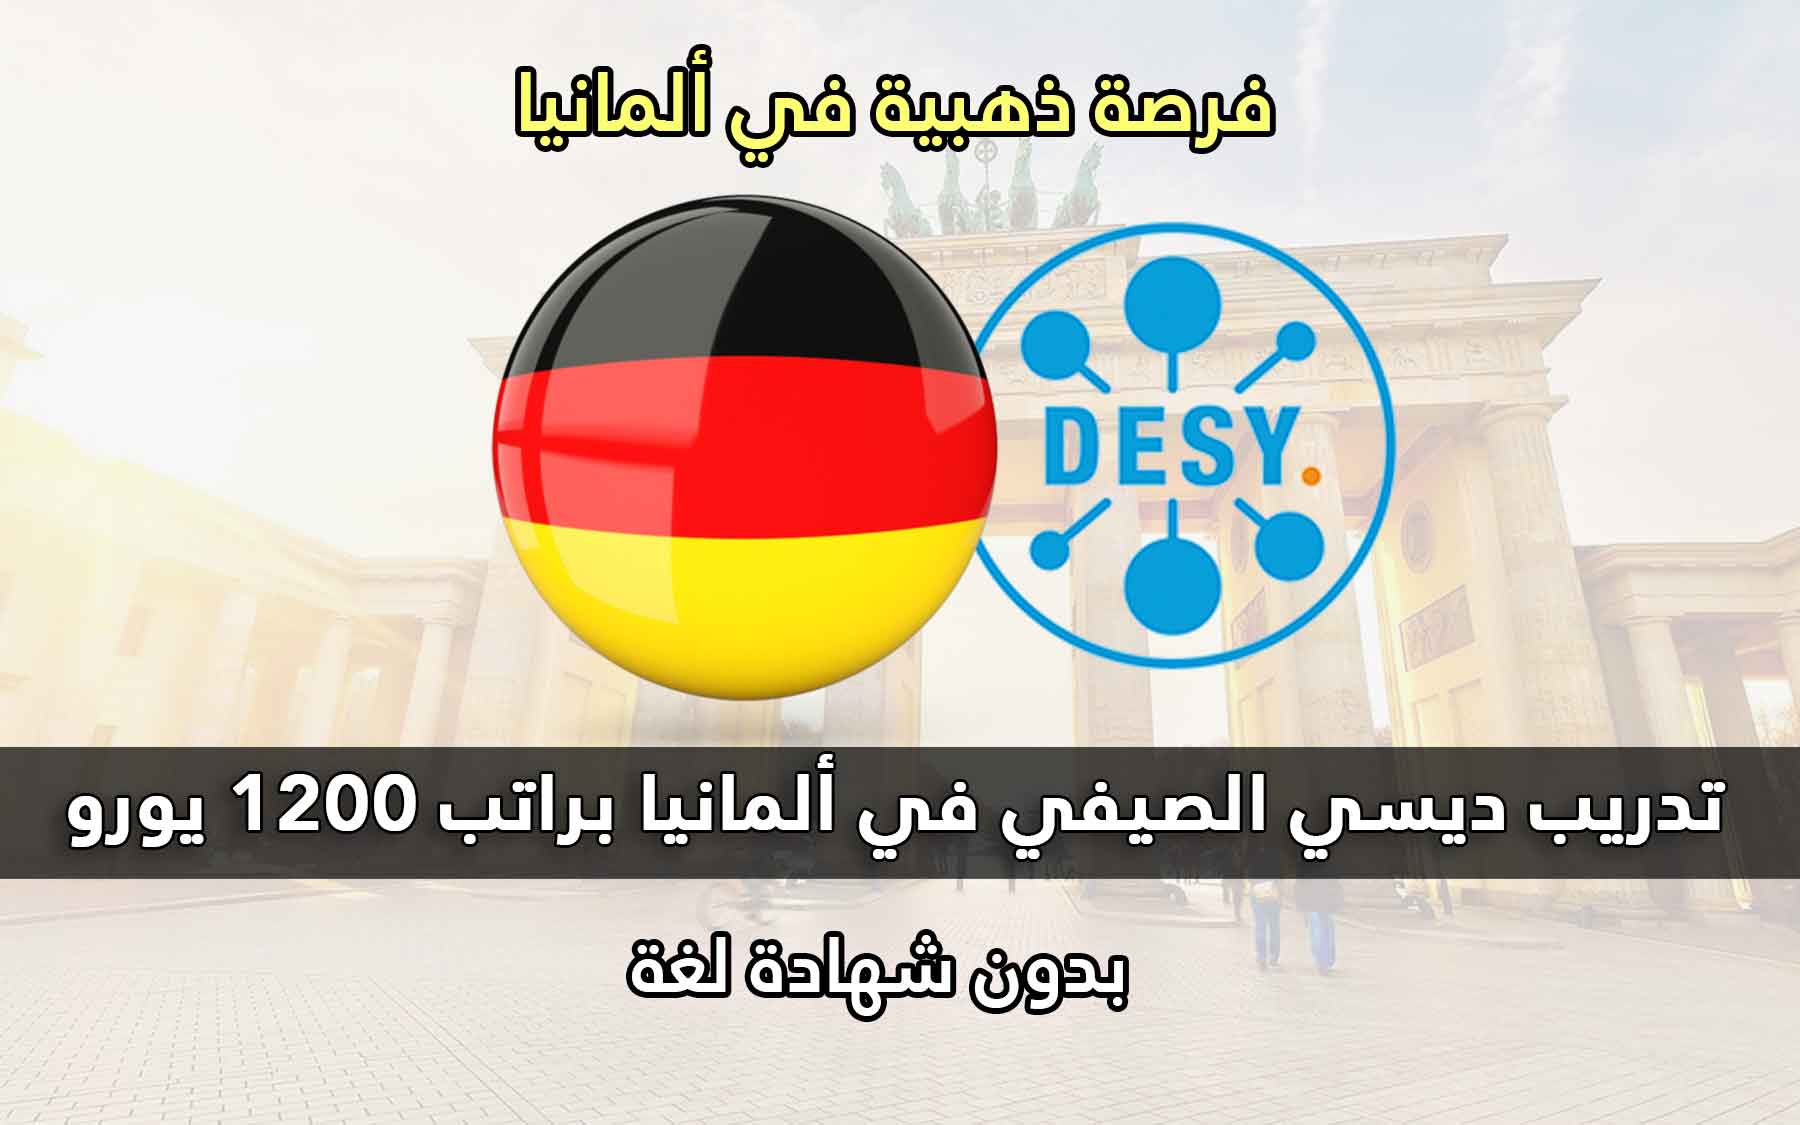 تدريب ديسي الصيفي في ألمانيا براتب 1200 يورو